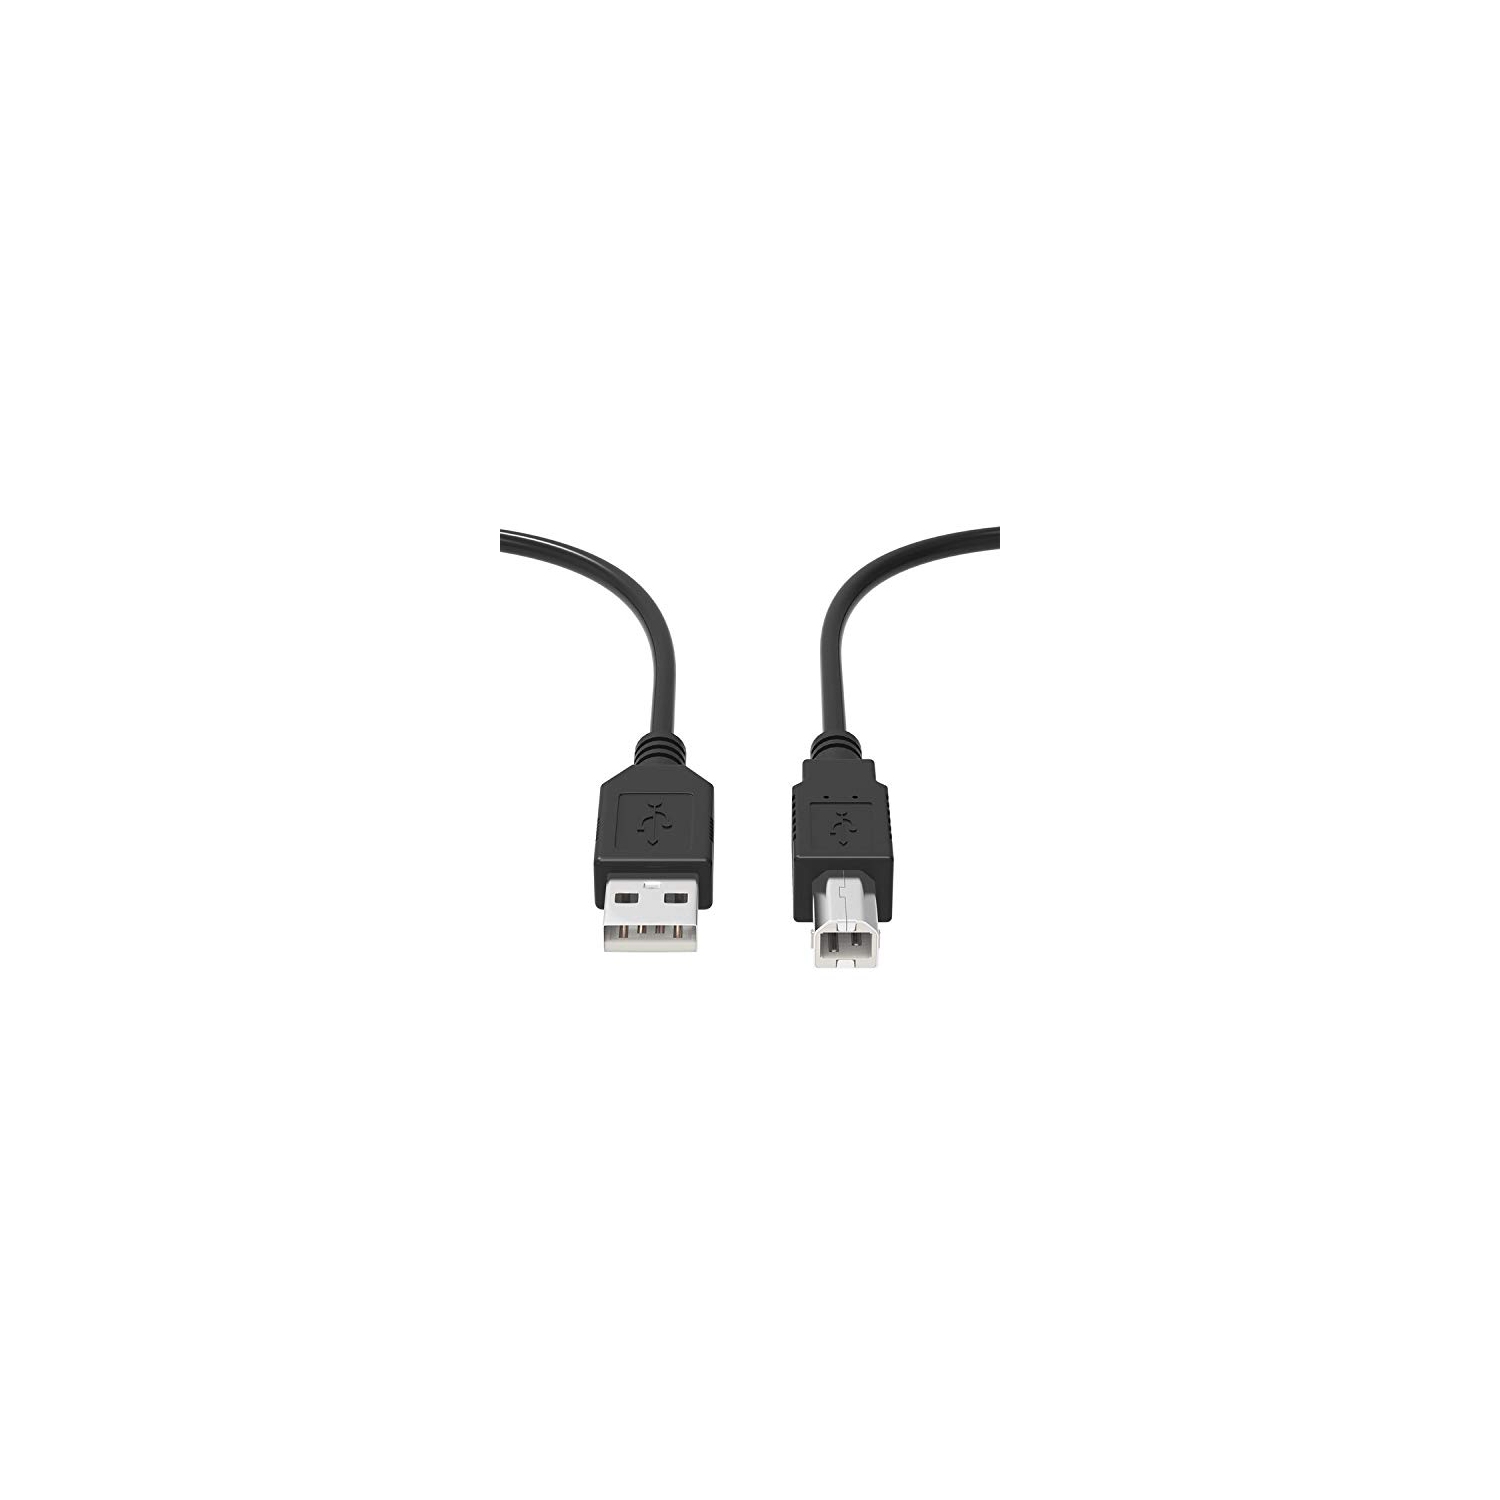 PK Power 6ft Printer USB Cable Cord Compatible with HP Deskjet D1550 D1558 D1568 D1660 D2430 D2445